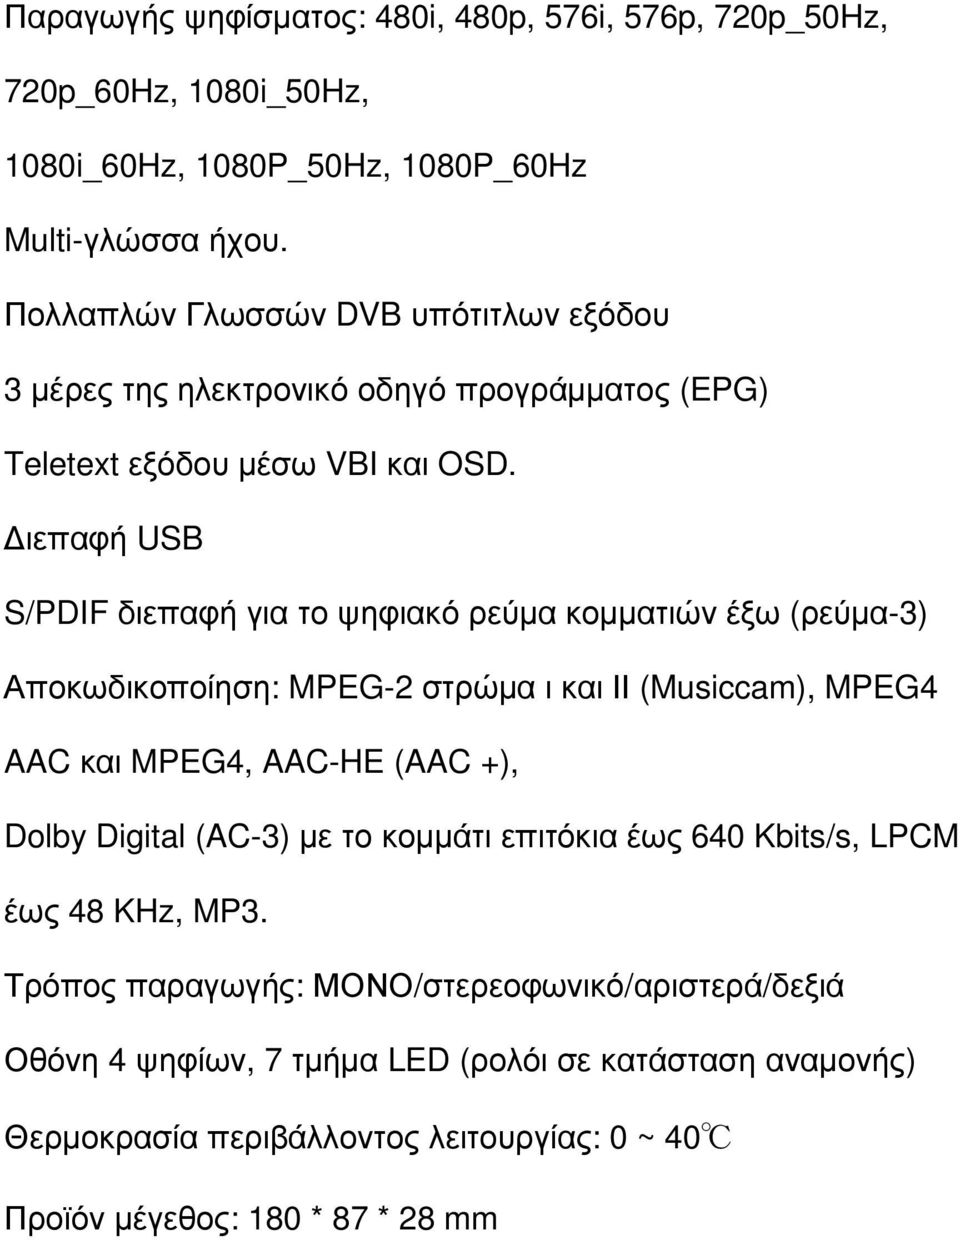 ιεπαφή USB S/PDIF διεπαφή για το ψηφιακό ρεύµα κοµµατιών έξω (ρεύµα-3) Αποκωδικοποίηση: MPEG-2 στρώµα ι και ΙΙ (Musiccam), MPEG4 AAC και MPEG4, AAC-HE (AAC +), Dolby